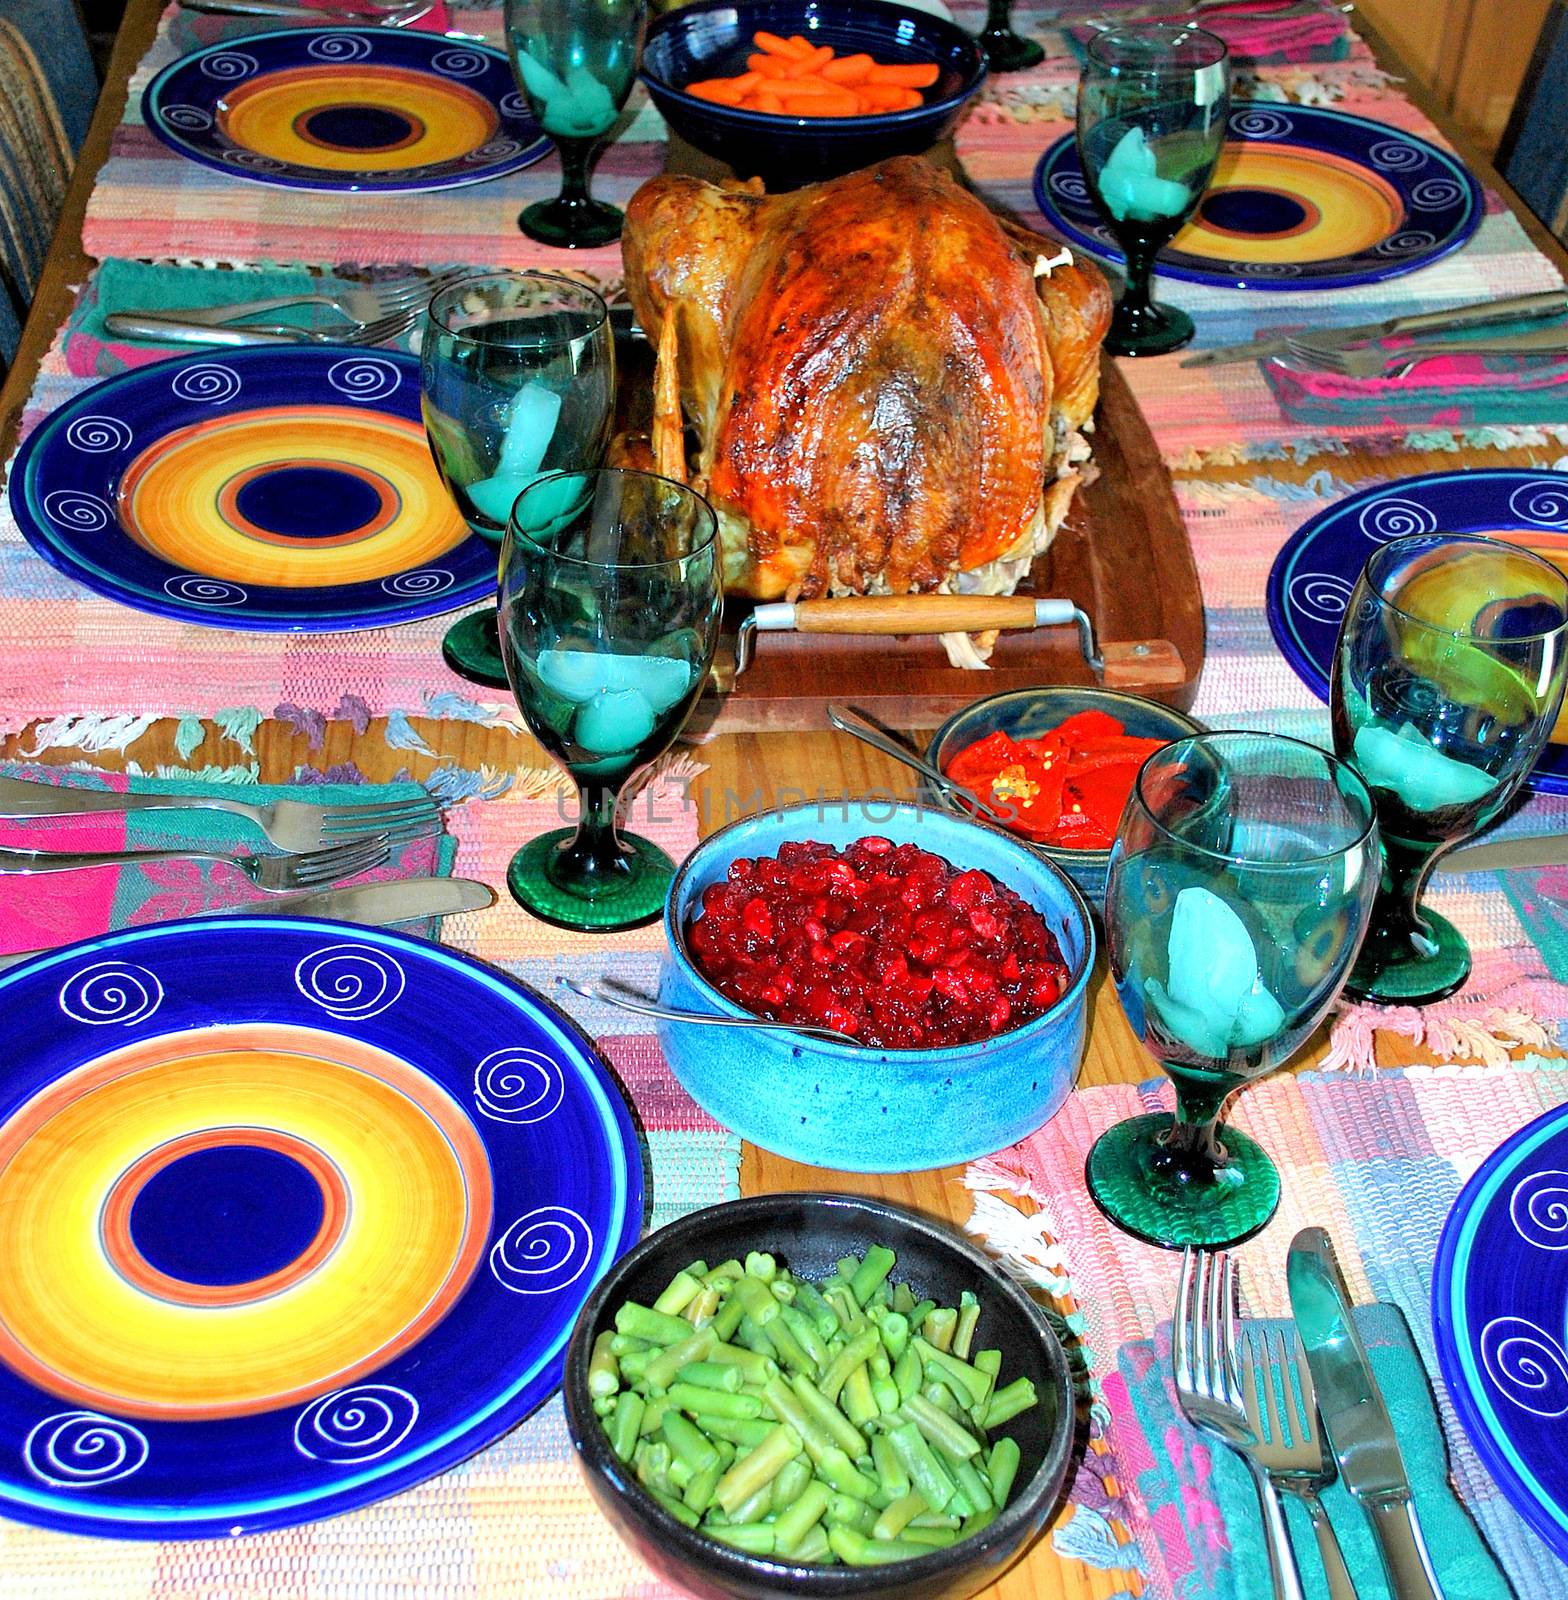 Holiday turkey dinner. by oscarcwilliams